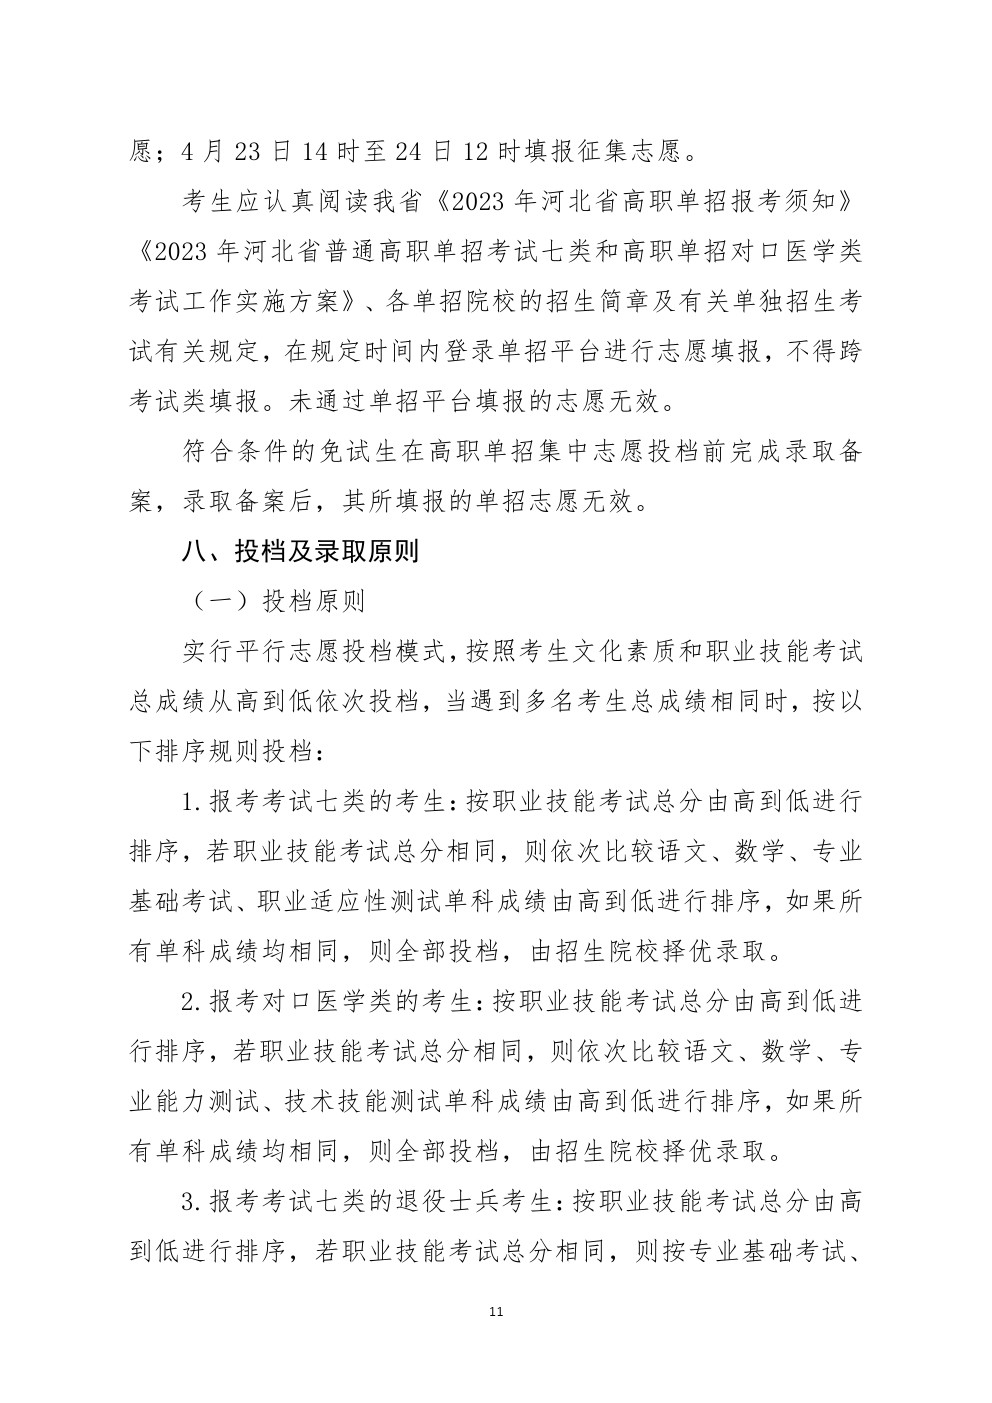 2023年河北省高职单招考试七类和对口医学类考试工作实施方案 